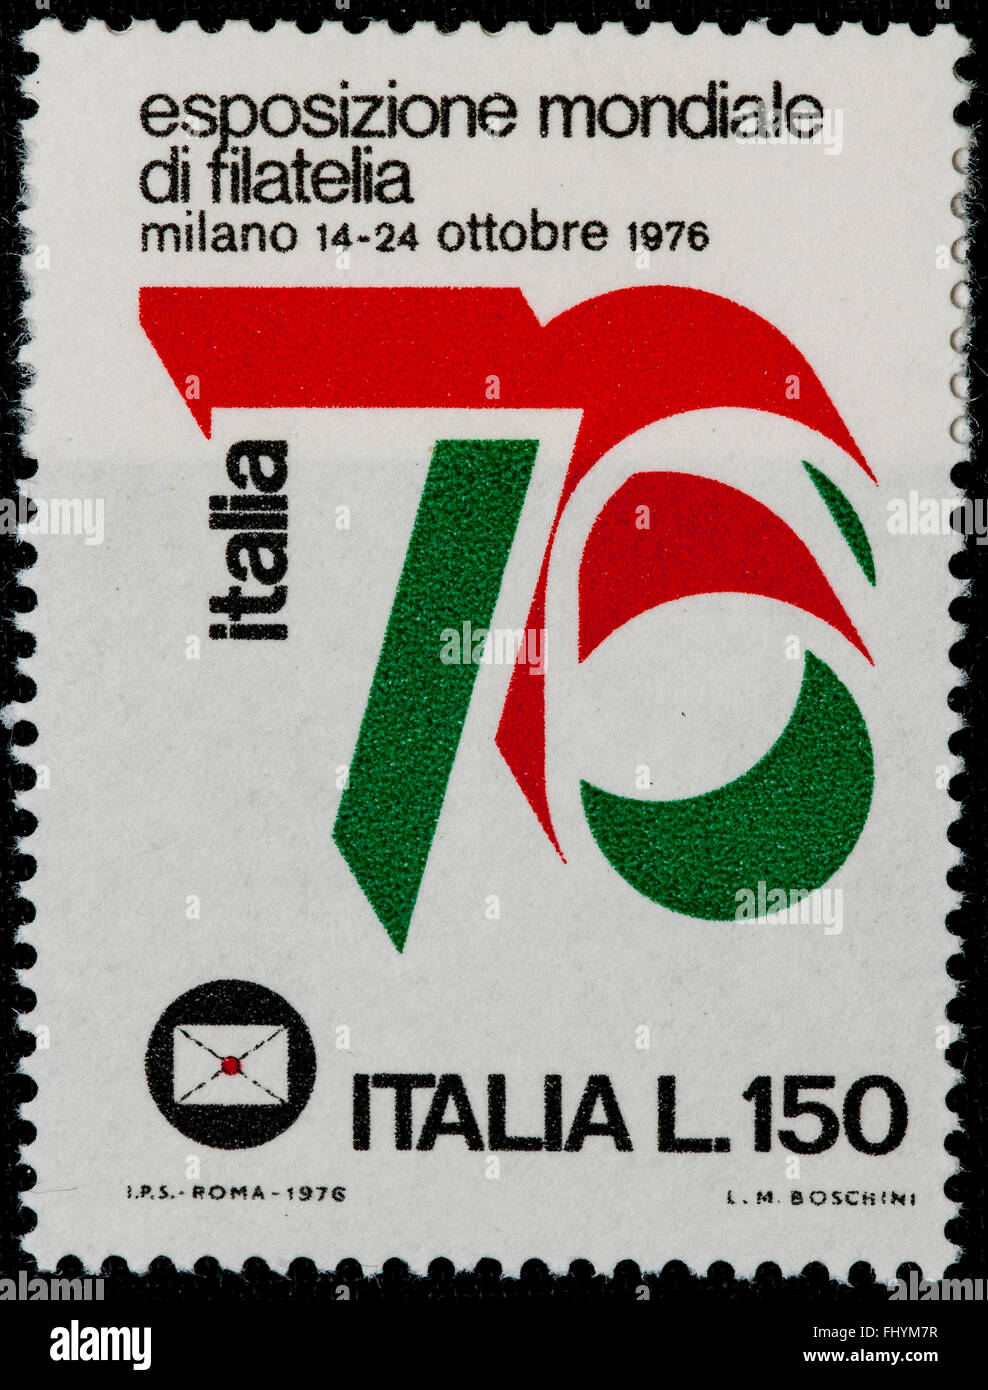 1976 - italienische Minze Briefmarke für weltweiten Philatelie-Expo zu feiern. Lire 150 Stockfoto